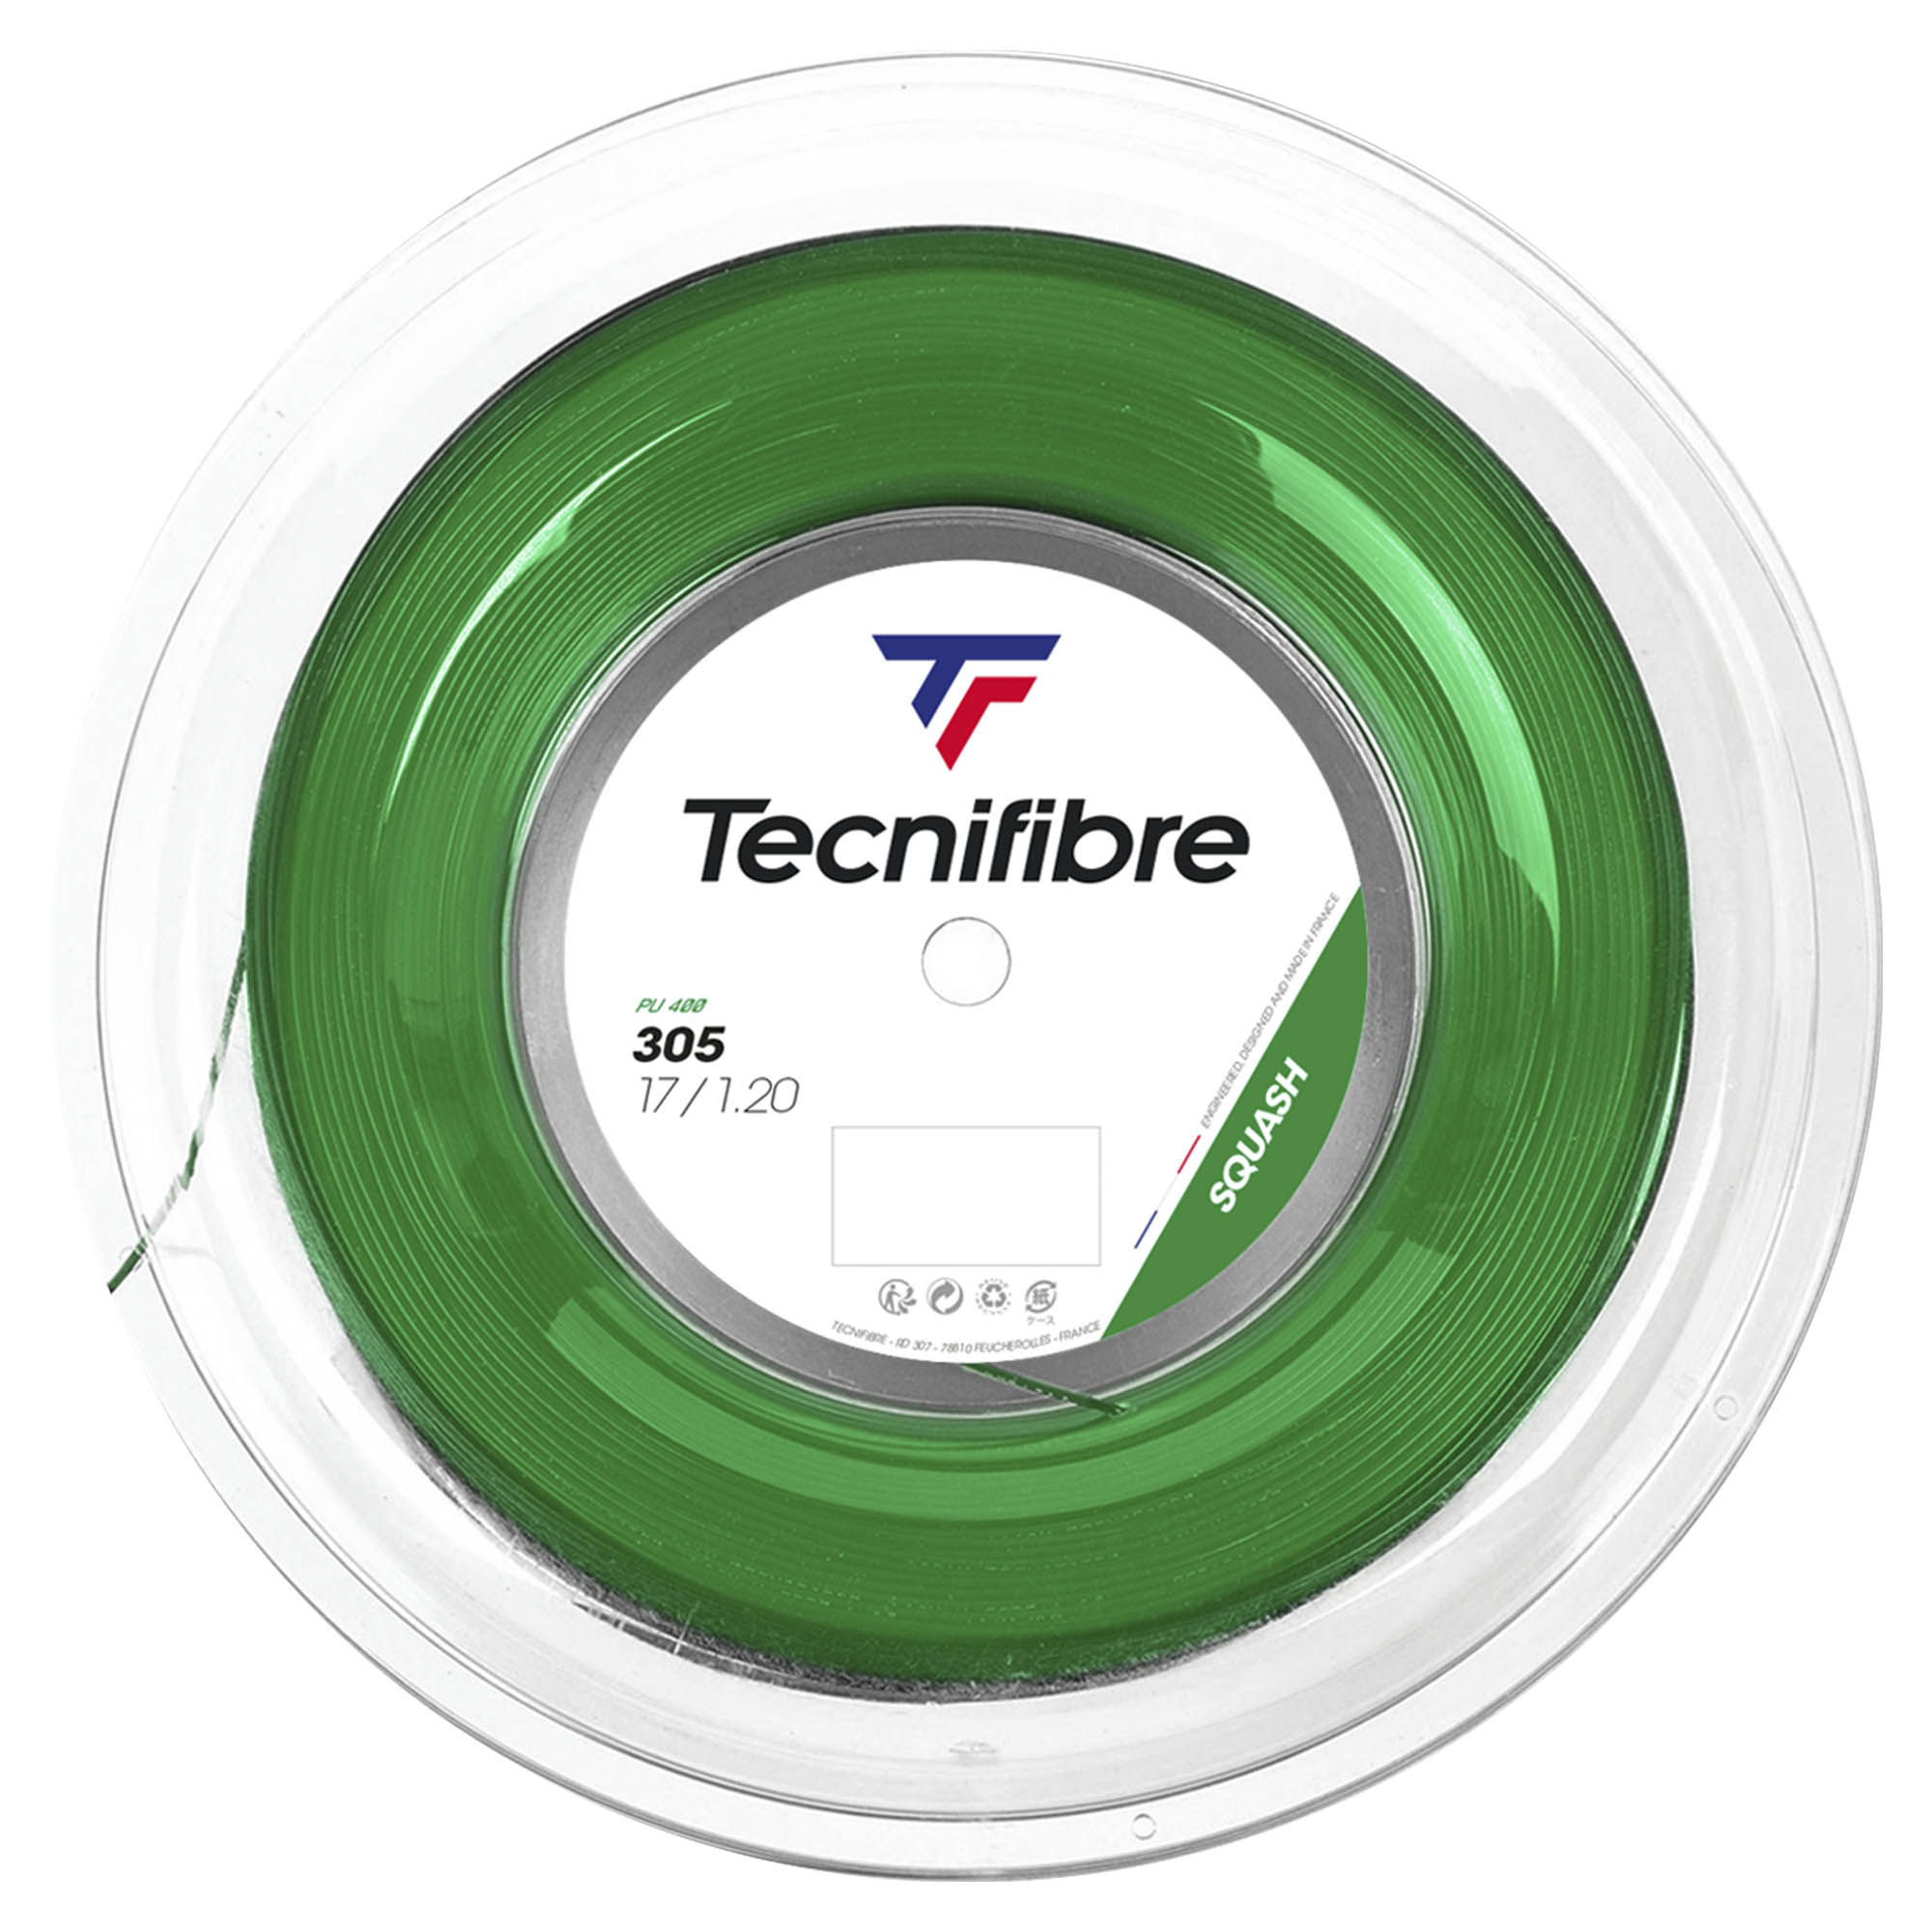 Tecnifibre 305 Premium Green Squash String - 110m Reel